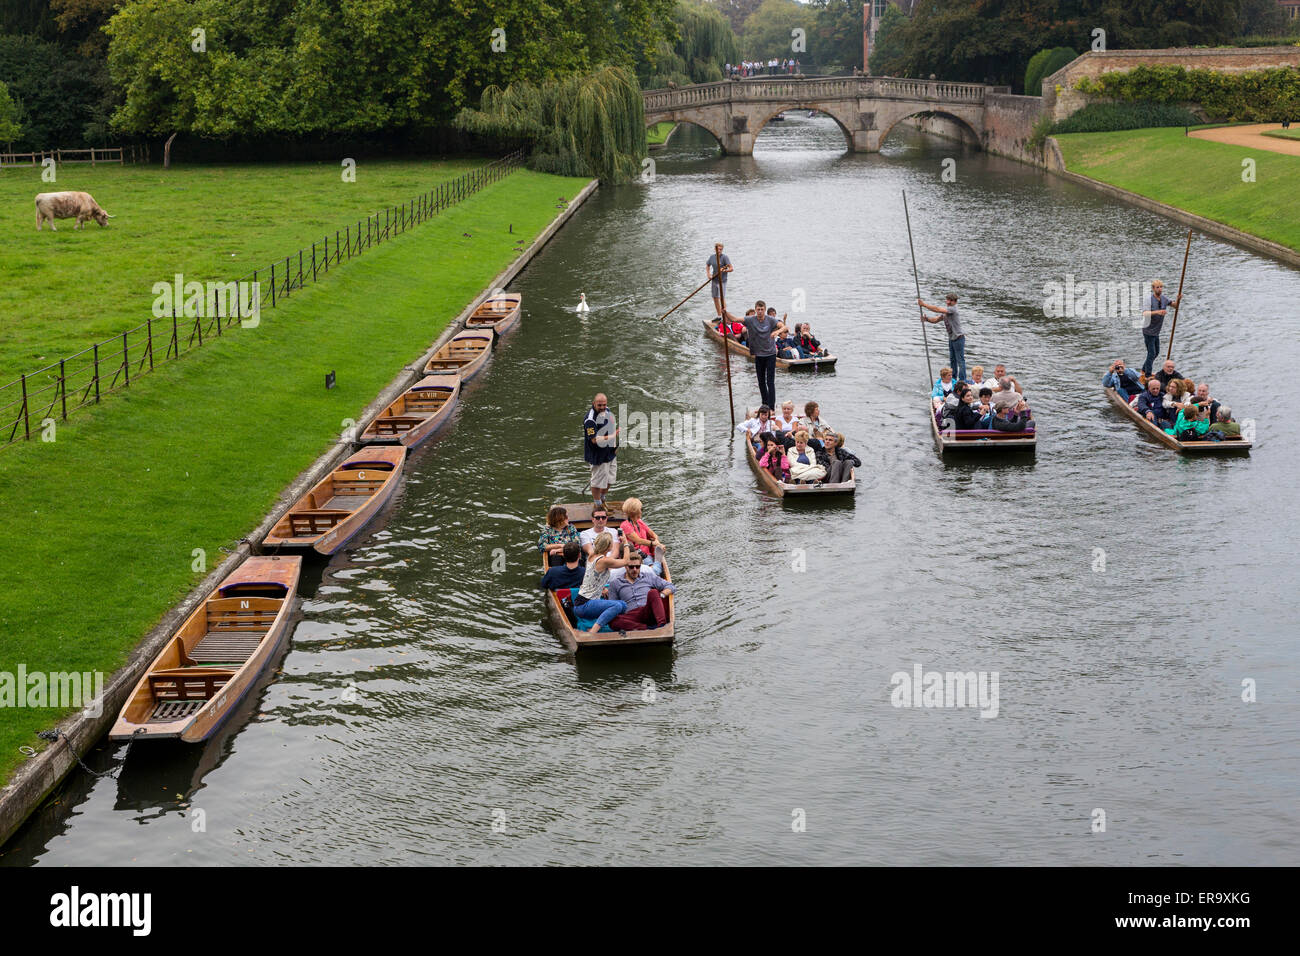 Royaume-uni, Angleterre, Cambridge. Promenades en barque sur la rivière Cam, Clare Bridge en arrière-plan. Banque D'Images